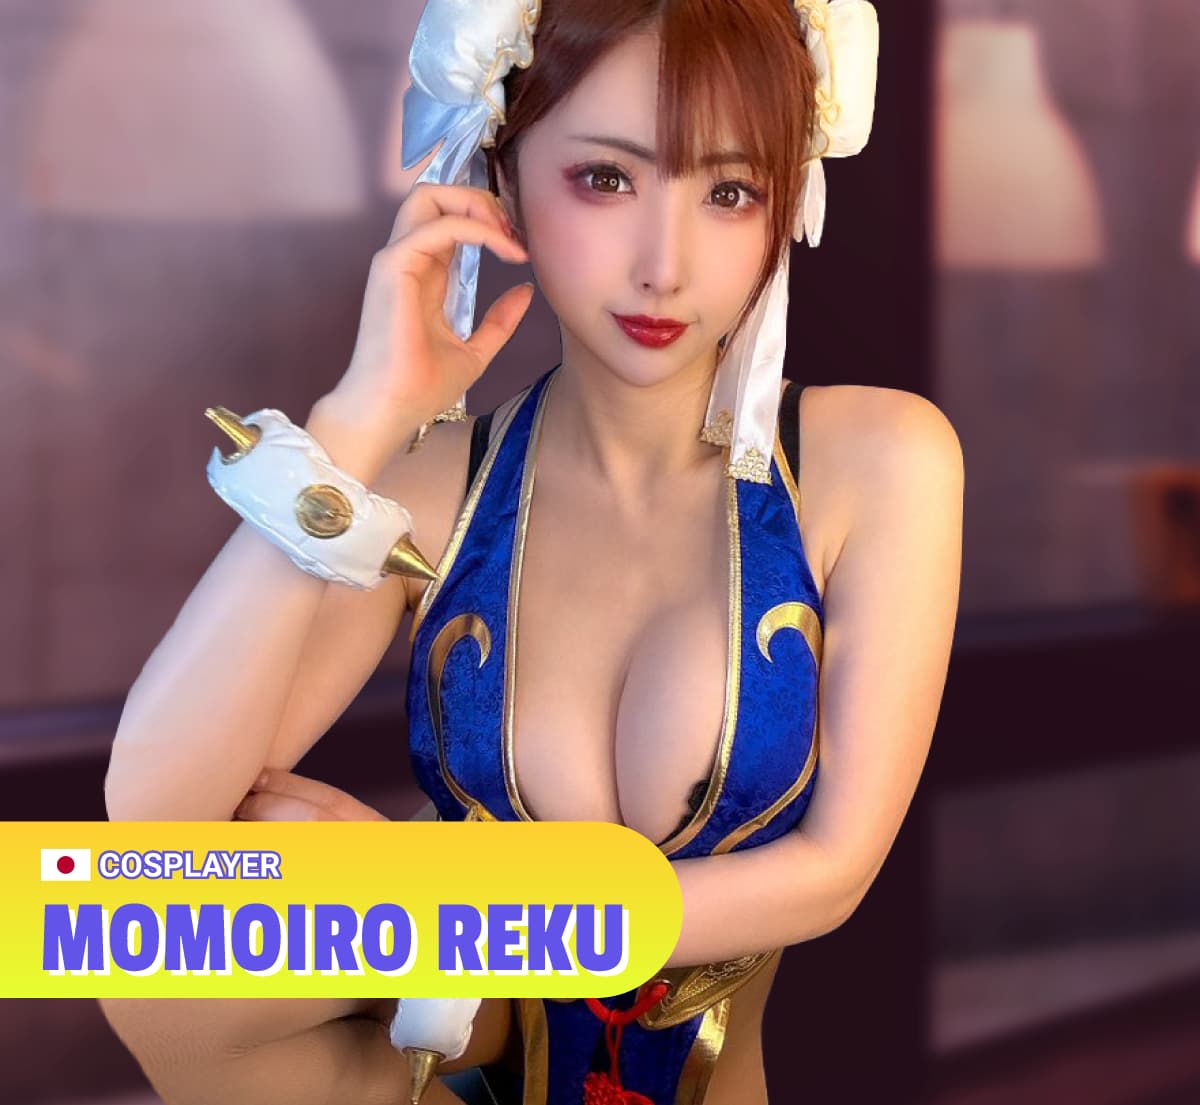 Momoiro Reku - Cosplayer